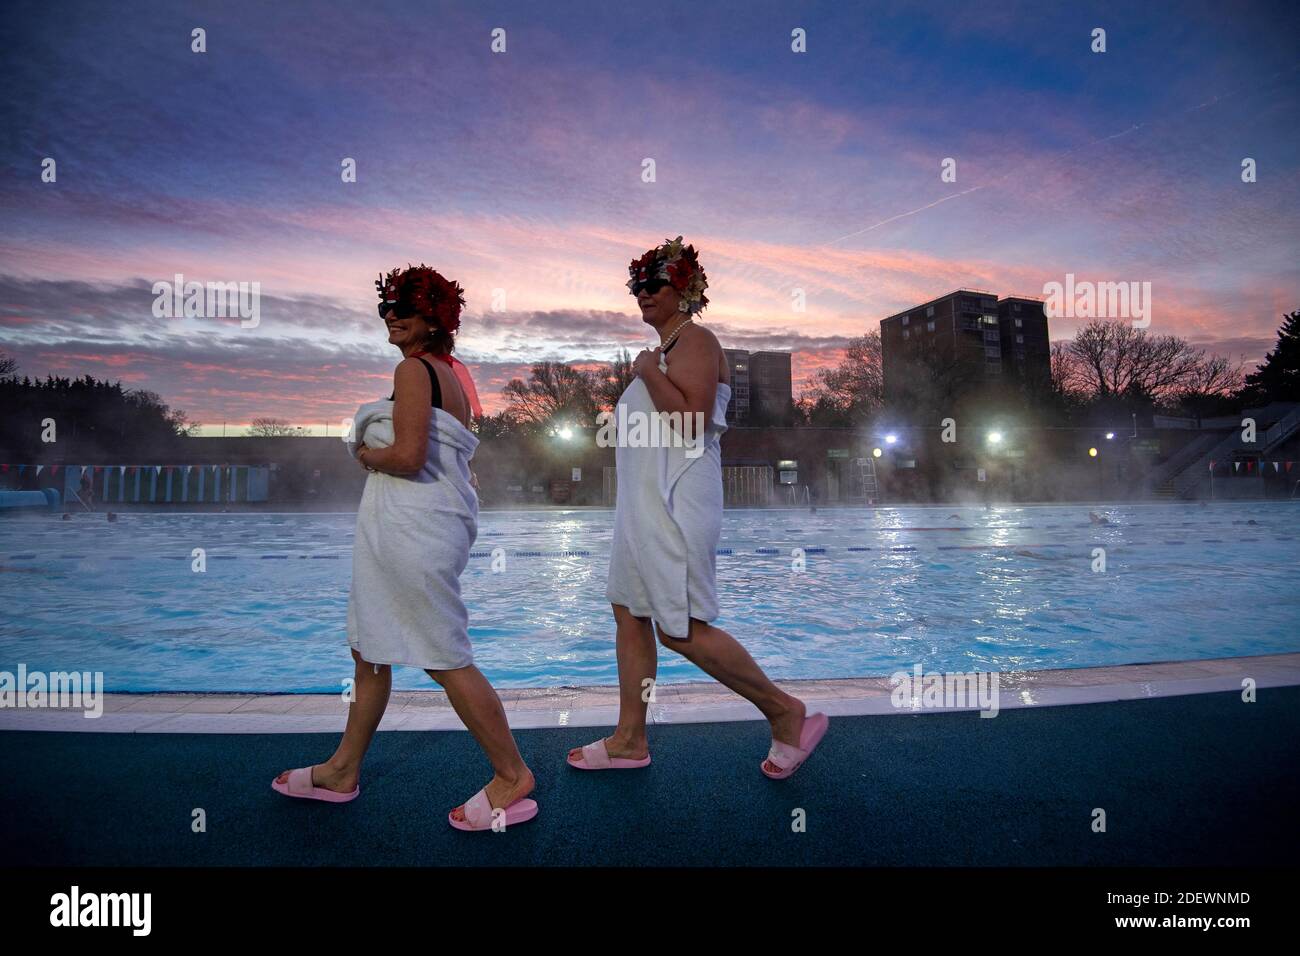 Nuotatori noti come Lido Ladies durante l'alba a Charlton Lido a Hornfair Park, Londra, il suo primo giorno di riapertura dopo la fine della seconda chiusura nazionale e l'Inghilterra entra in un sistema rafforzato di restrizioni regionali per i coronavirus. Foto Stock